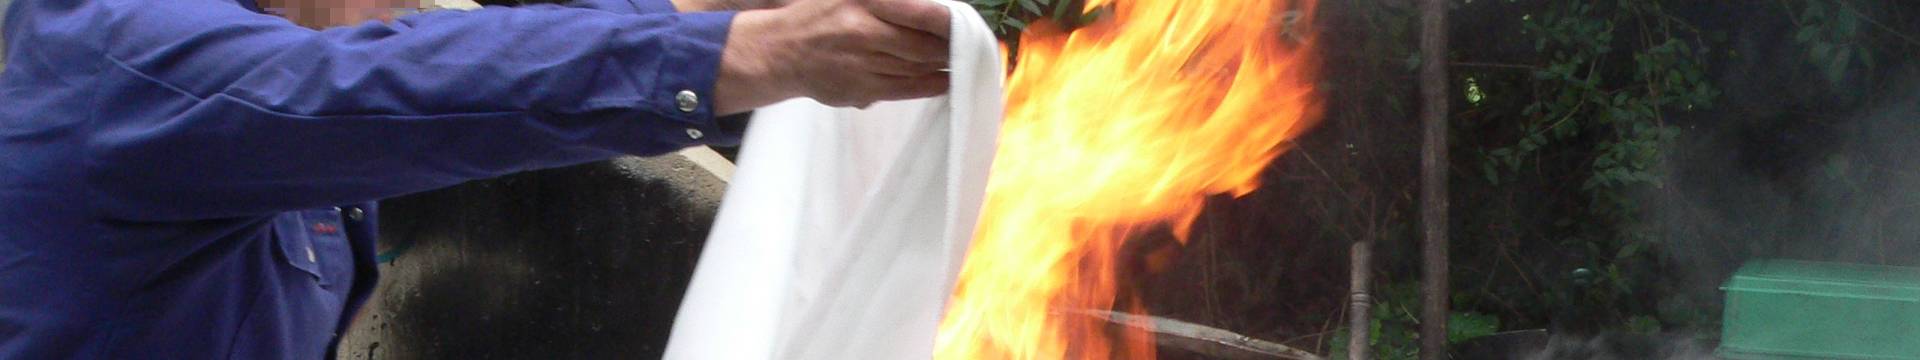 Un homme utilise une couverture anti-incendie pour éteindre le feu.